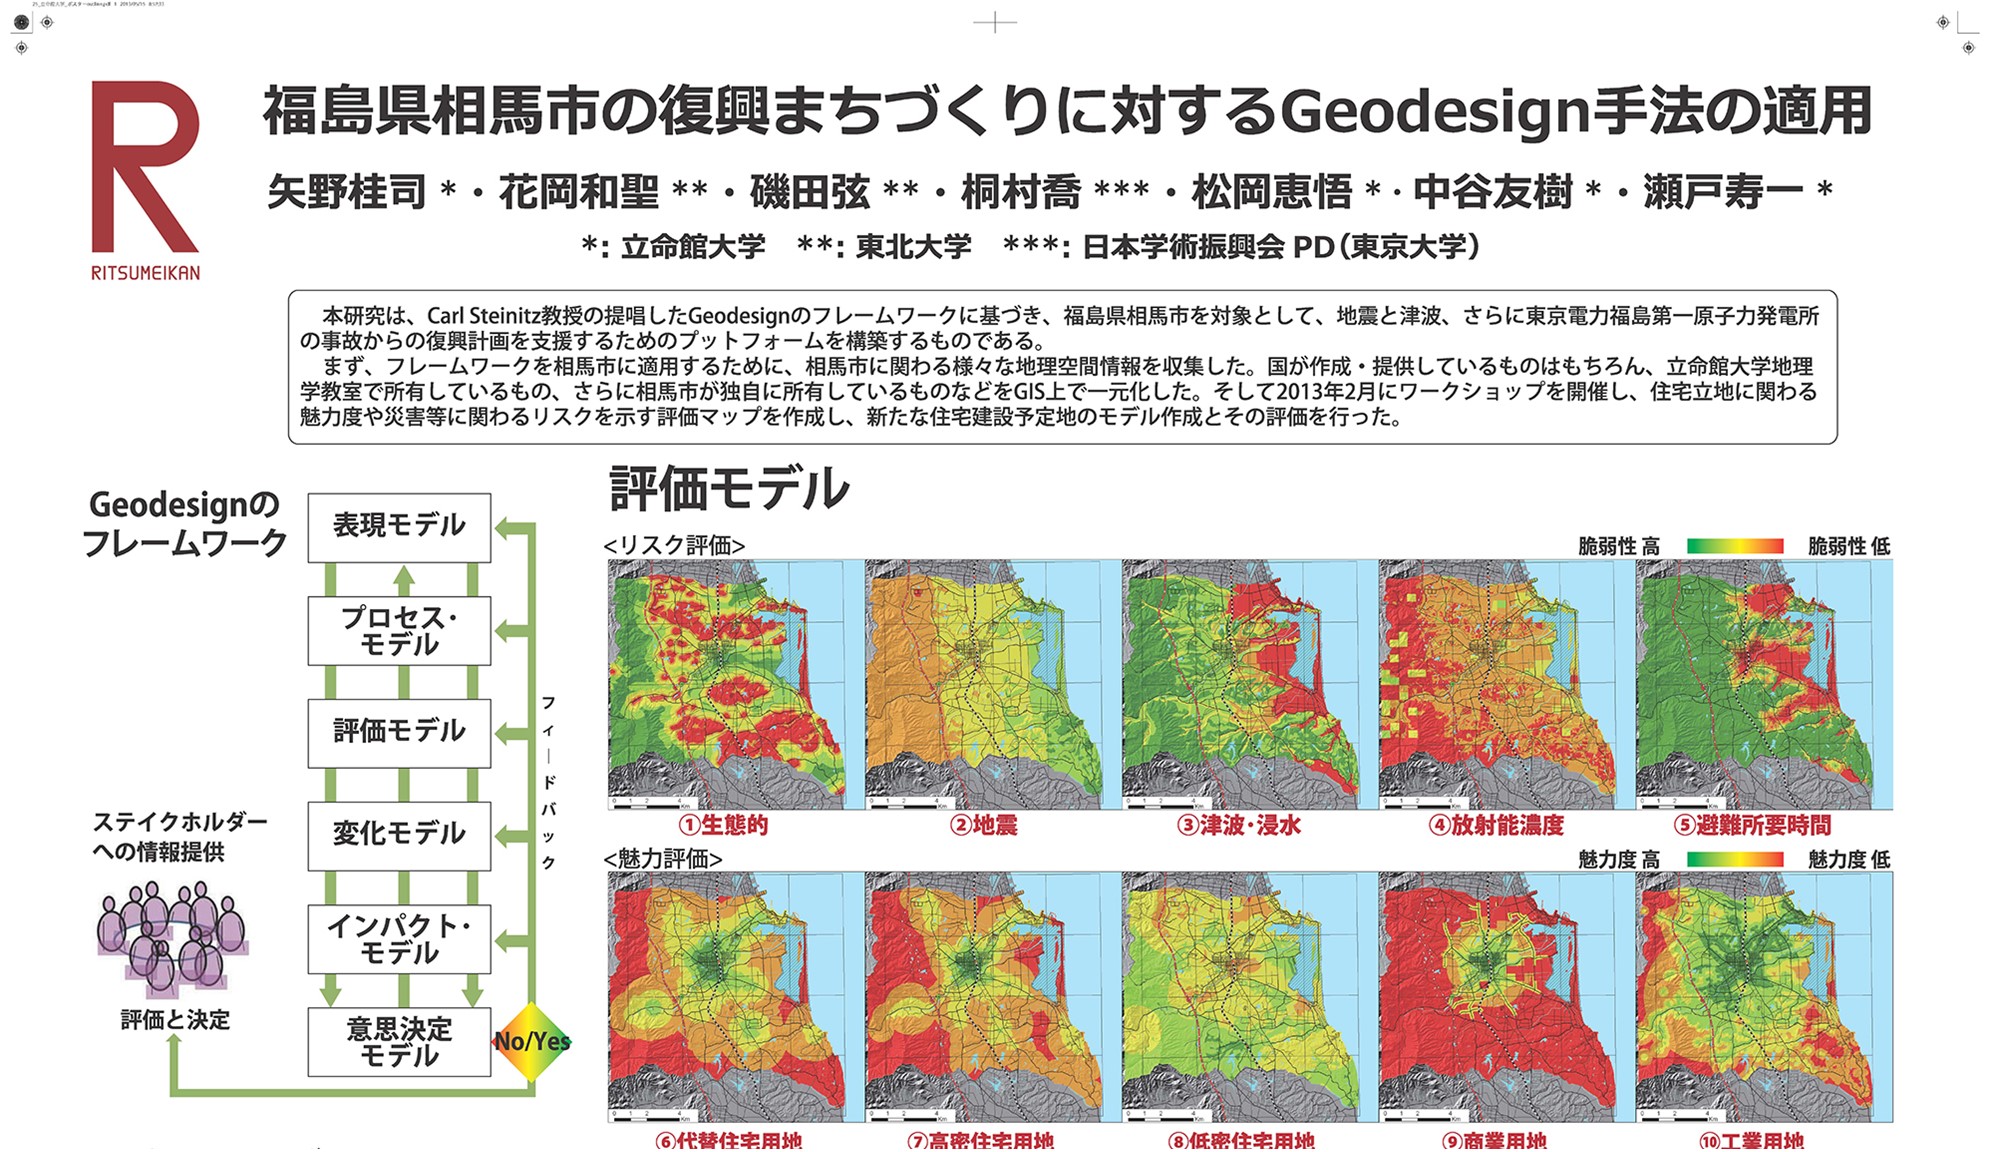 福島県相馬市を対象とした土地利用デザインの提案"